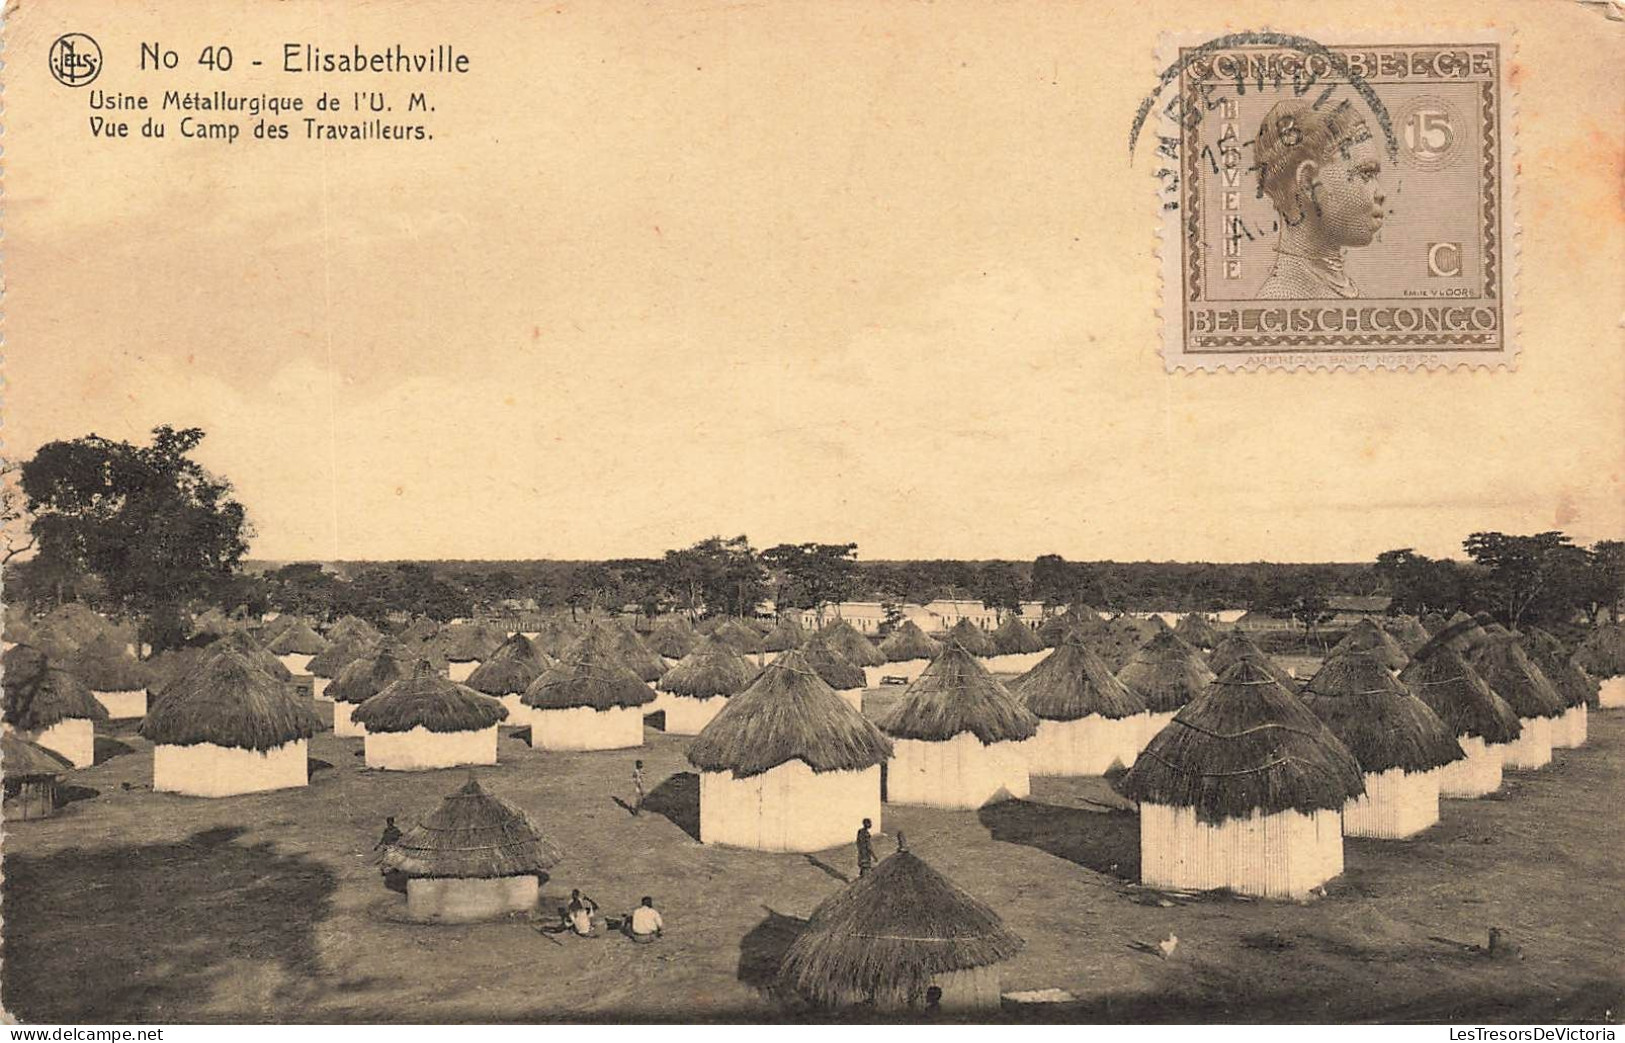 CONGO BELGE - Elisabethville - Usine Métallurgie De L'U.M - Vue Du Camp Des Travailleurs - Carte Postale Ancienne - Congo Belge